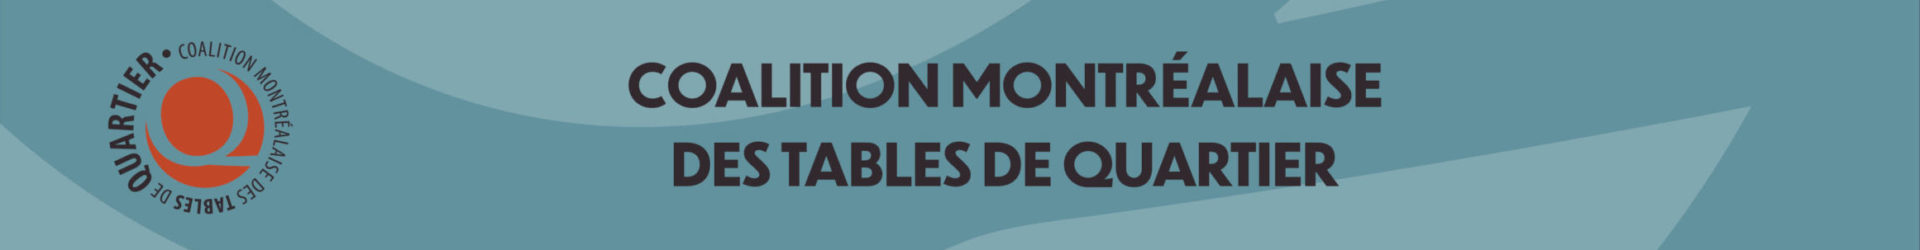 Élections Montréal 2021 : un Montréal pour tout le monde!